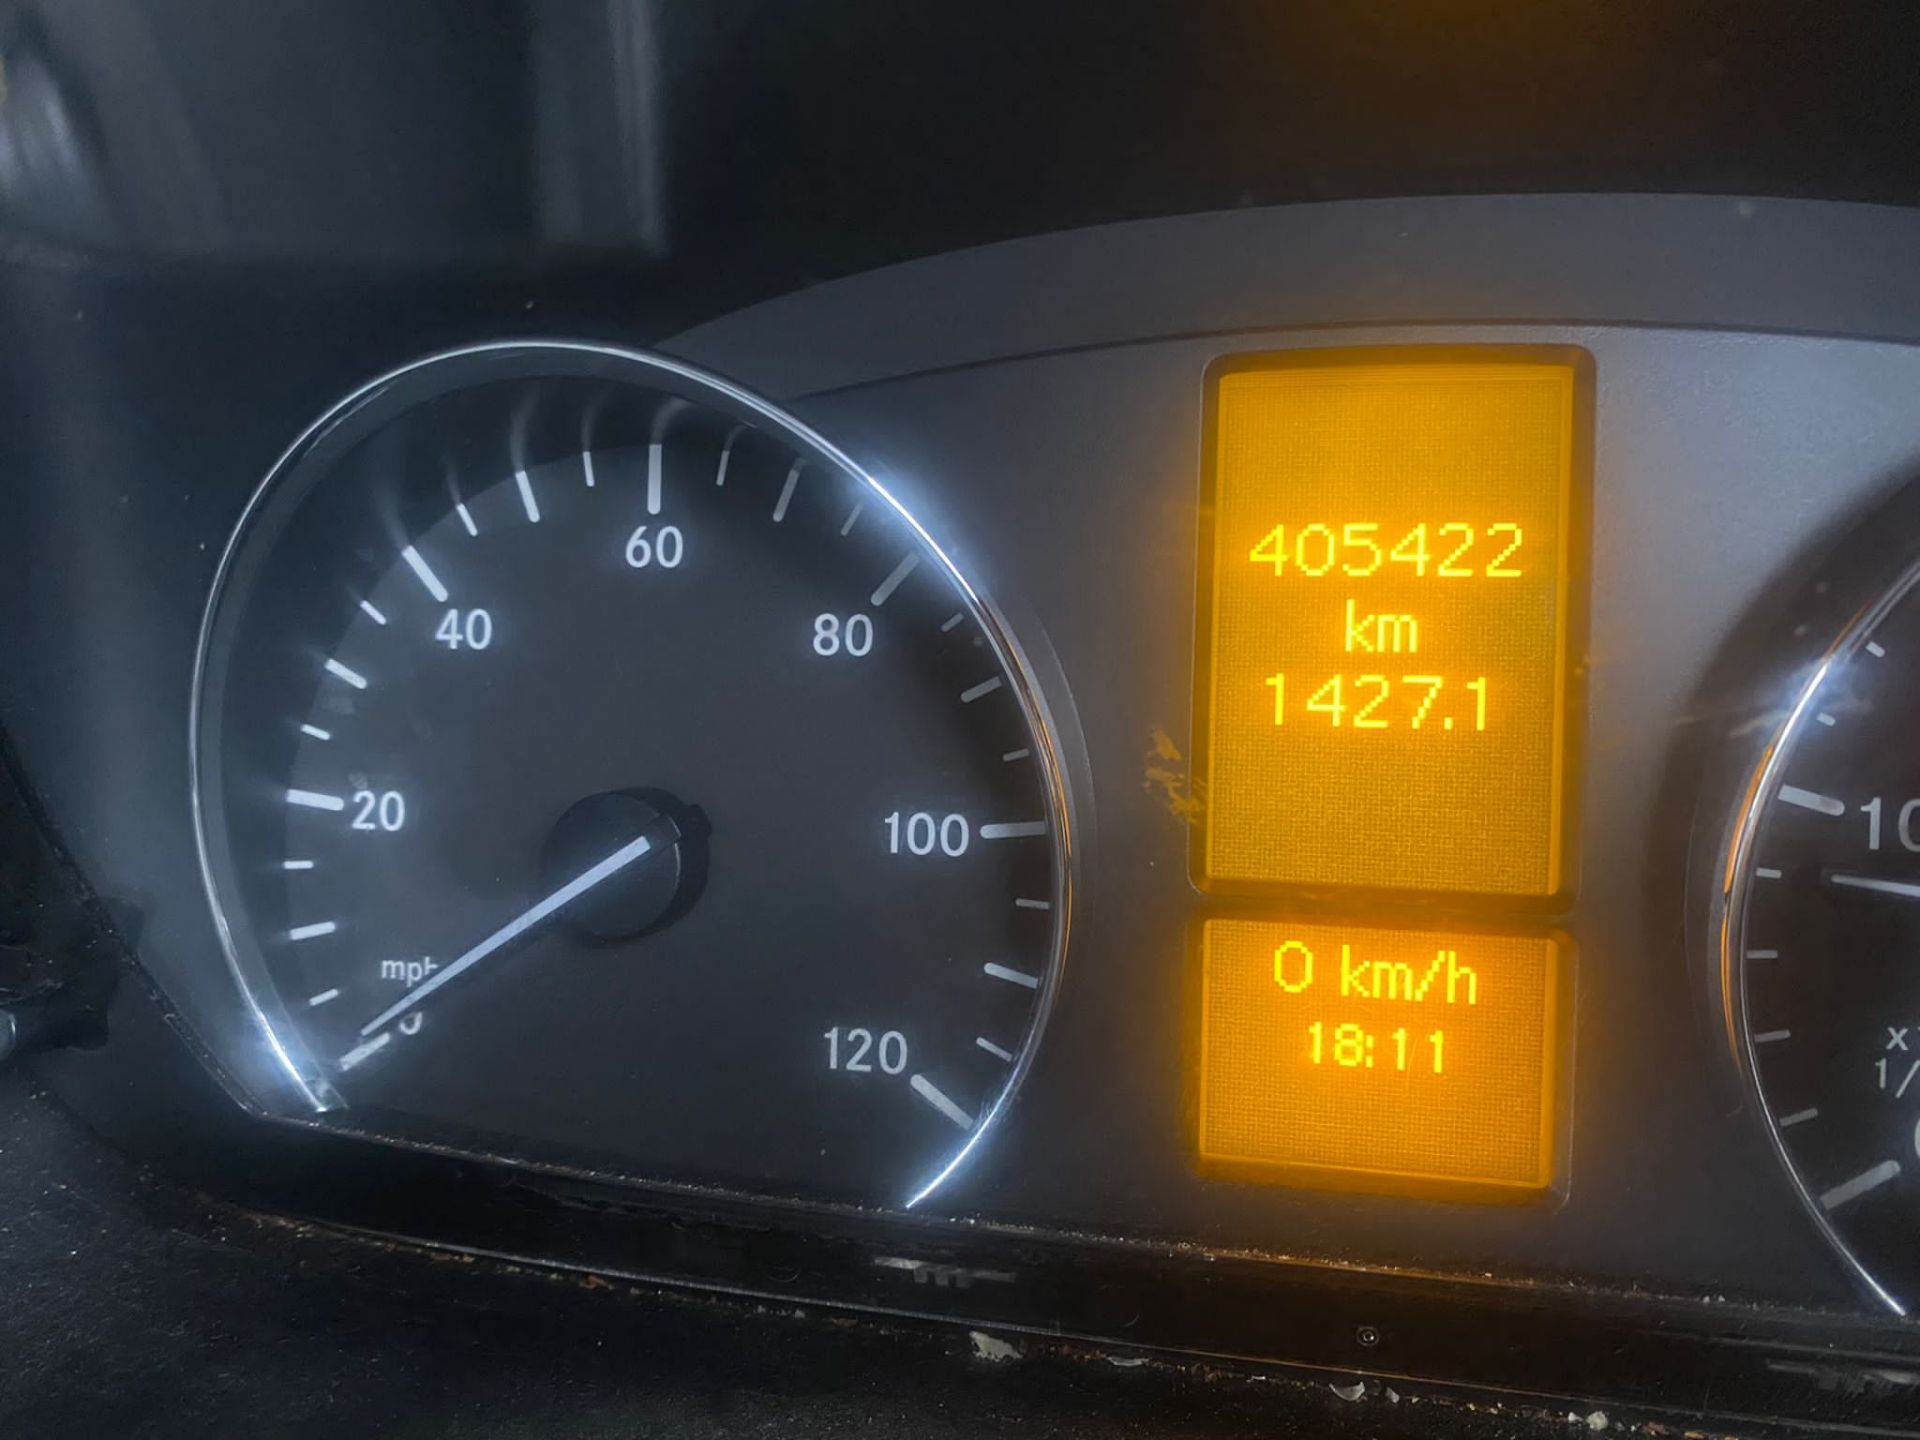 2014 Mercedes sprinter fridge van - Bild 8 aus 13